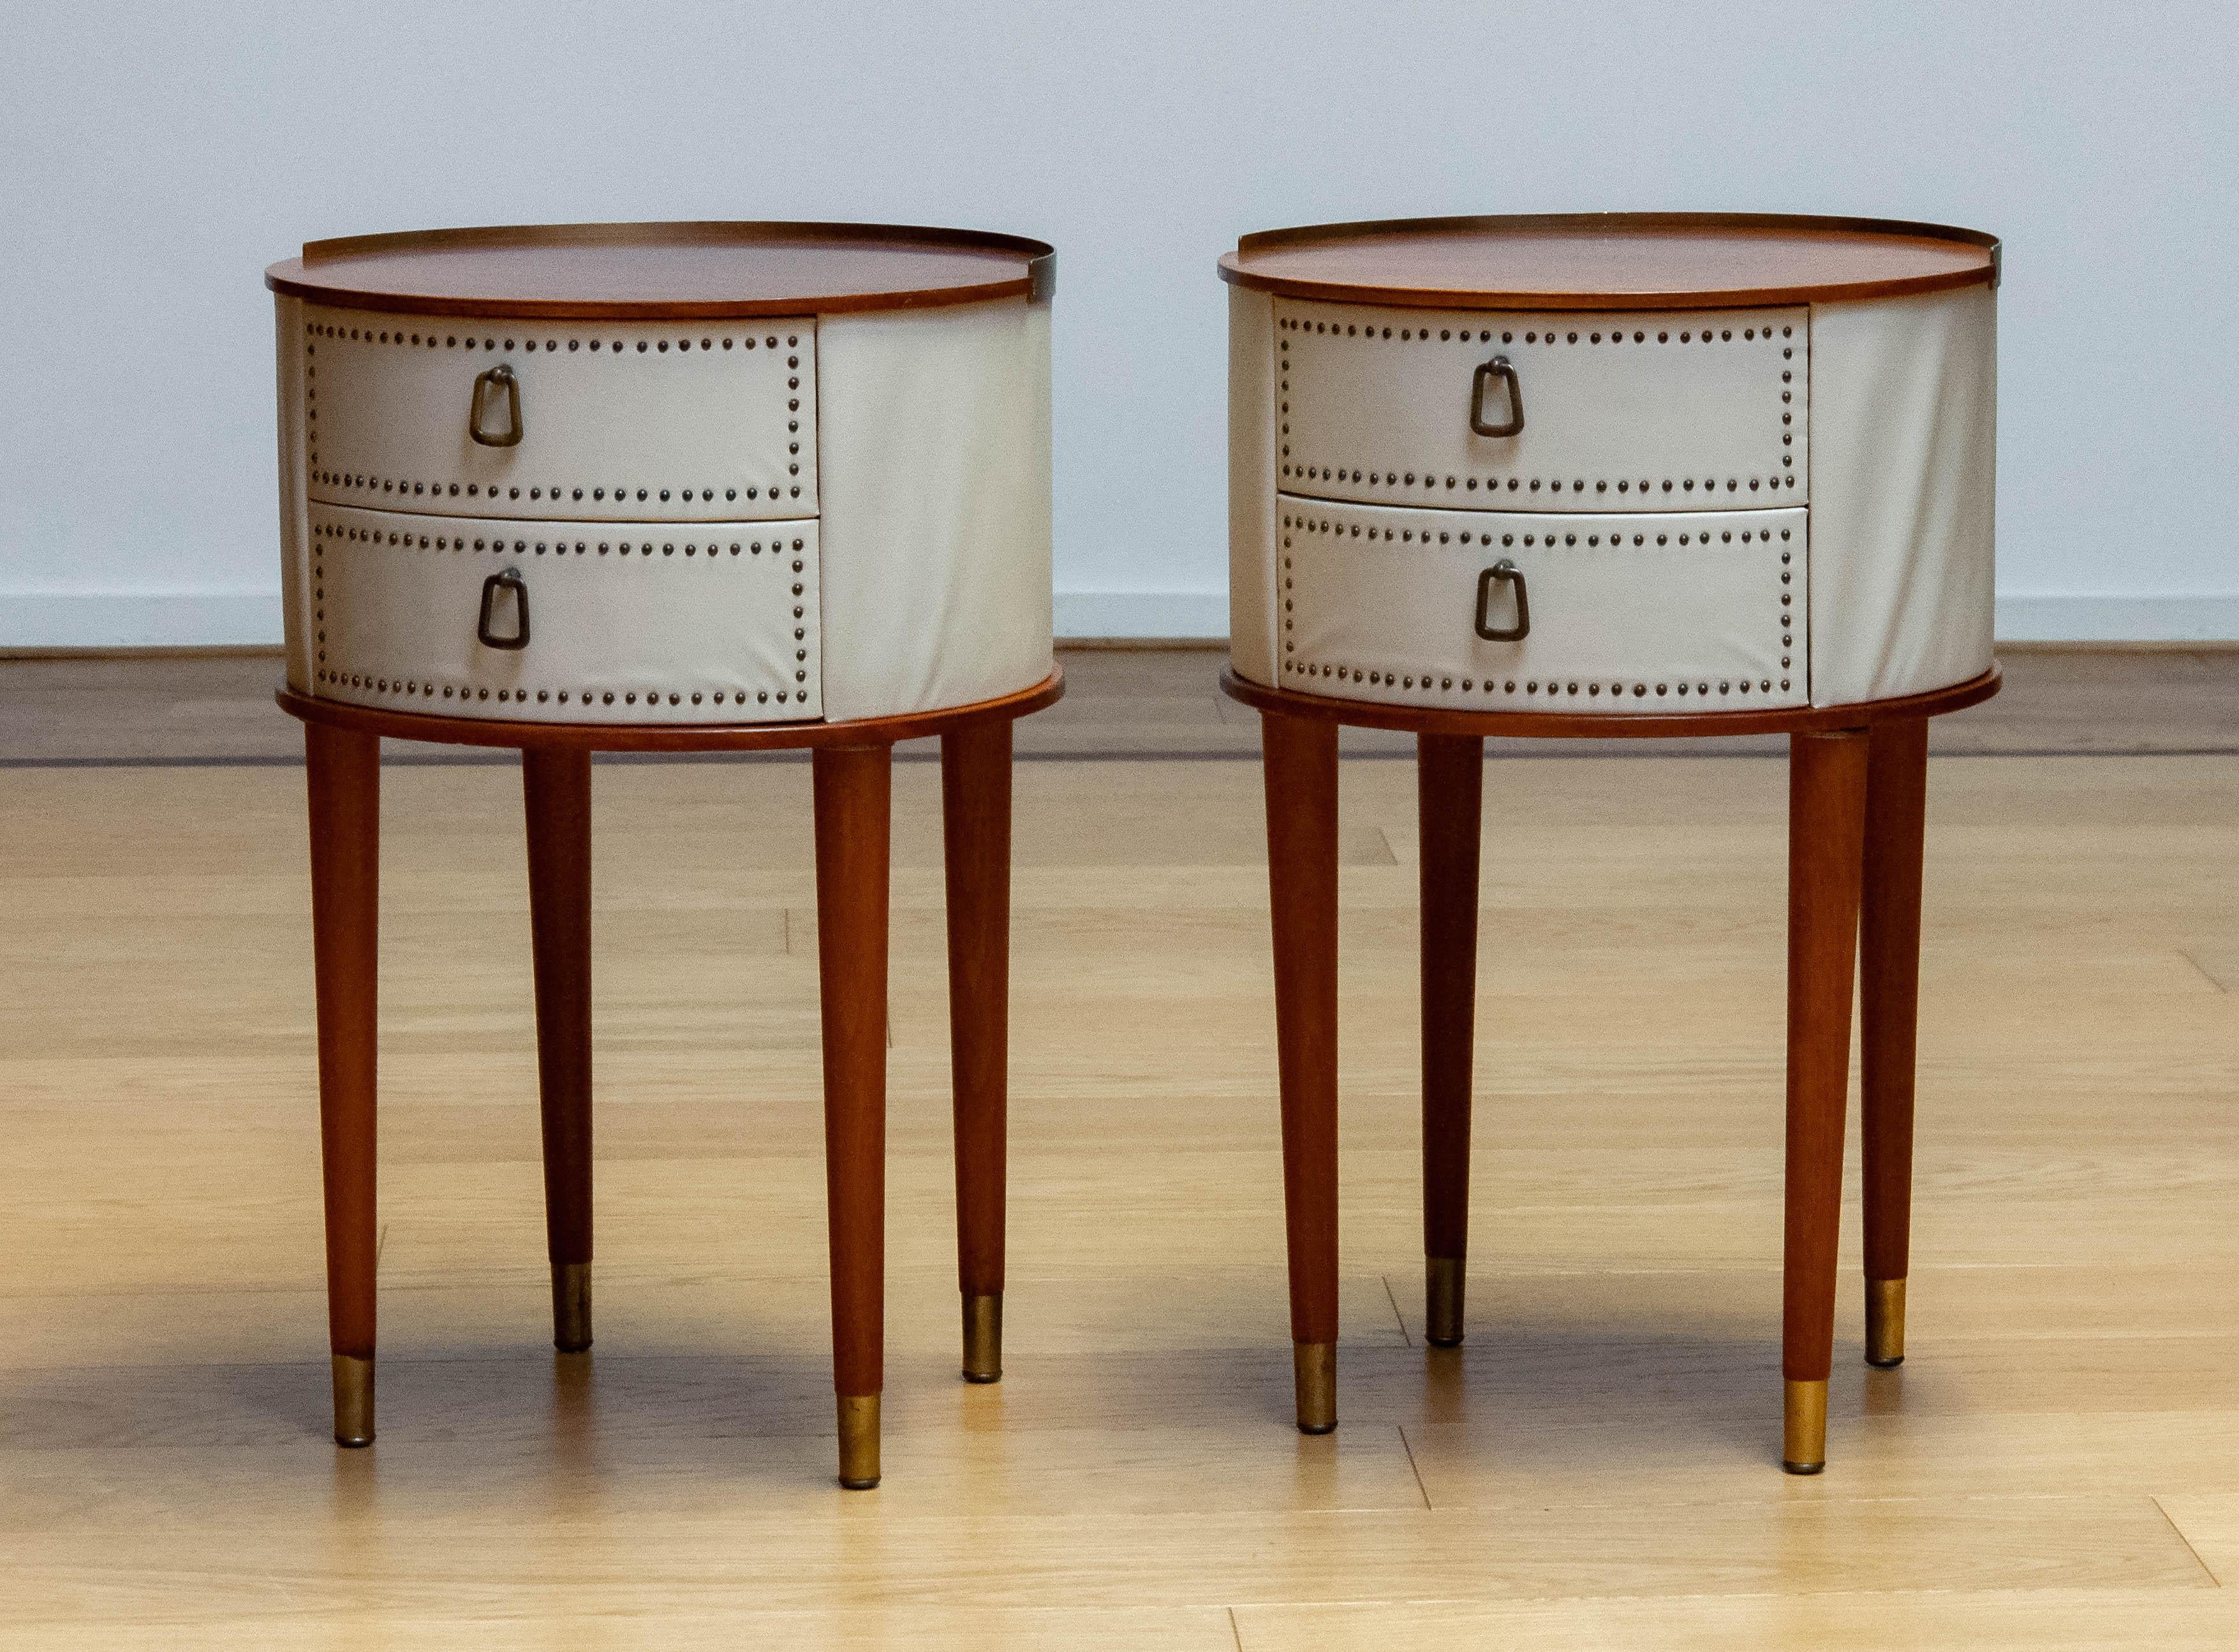 Schönes Paar Nachttische, entworfen von Halvdan Pettersson für Tibro in Schweden in den 1950er Jahren.
Beide Nachttische / Nachttische haben zwei Schubladen genagelt und Messinggehänge.
Die Nachttische sind beide in gutem Zustand.

Bitte beachten